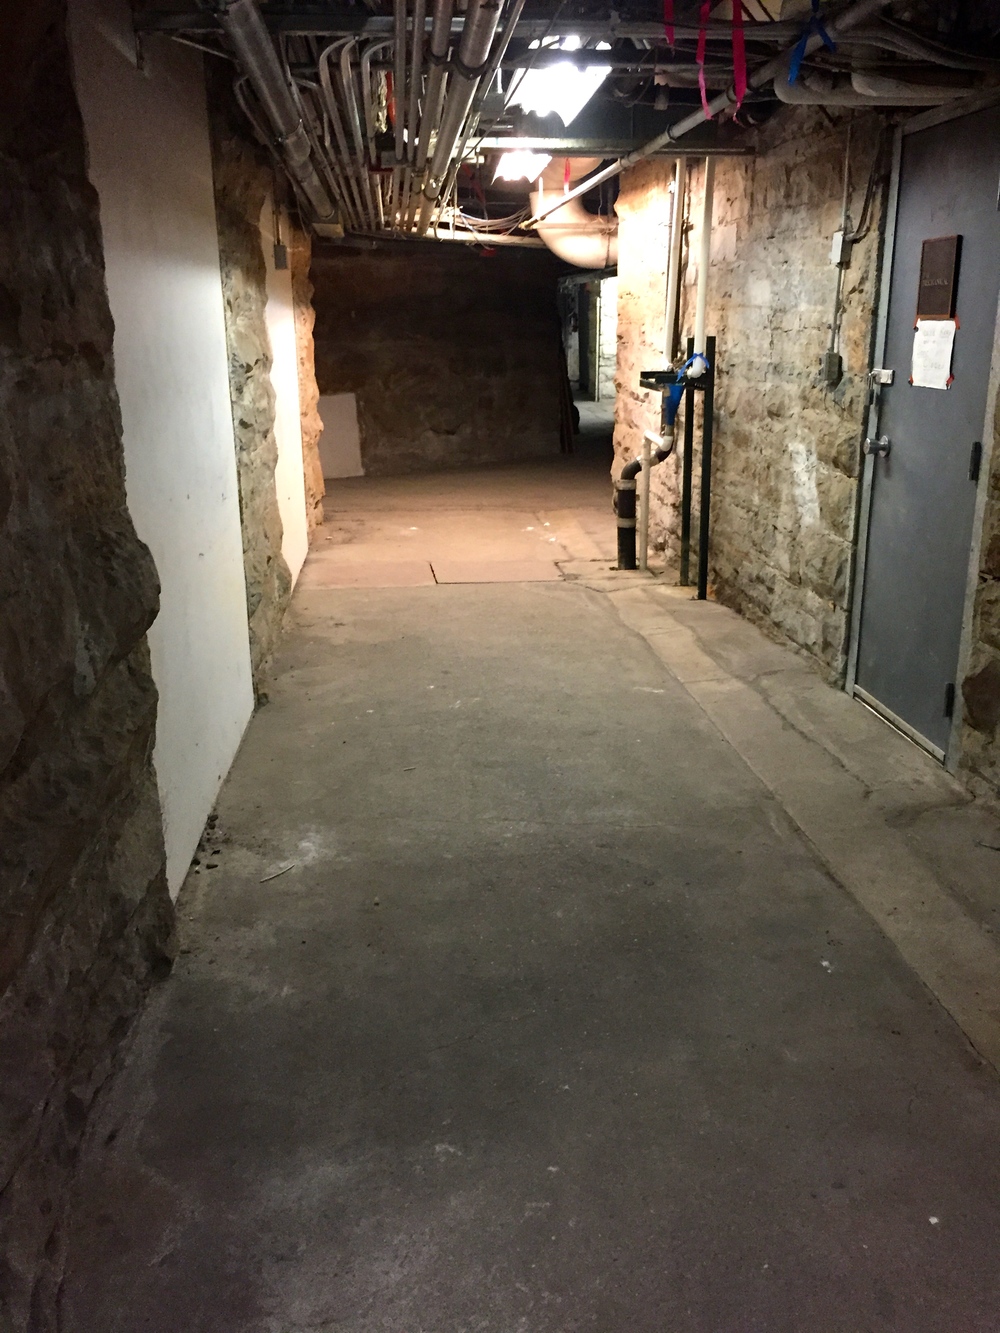 The sub-basement